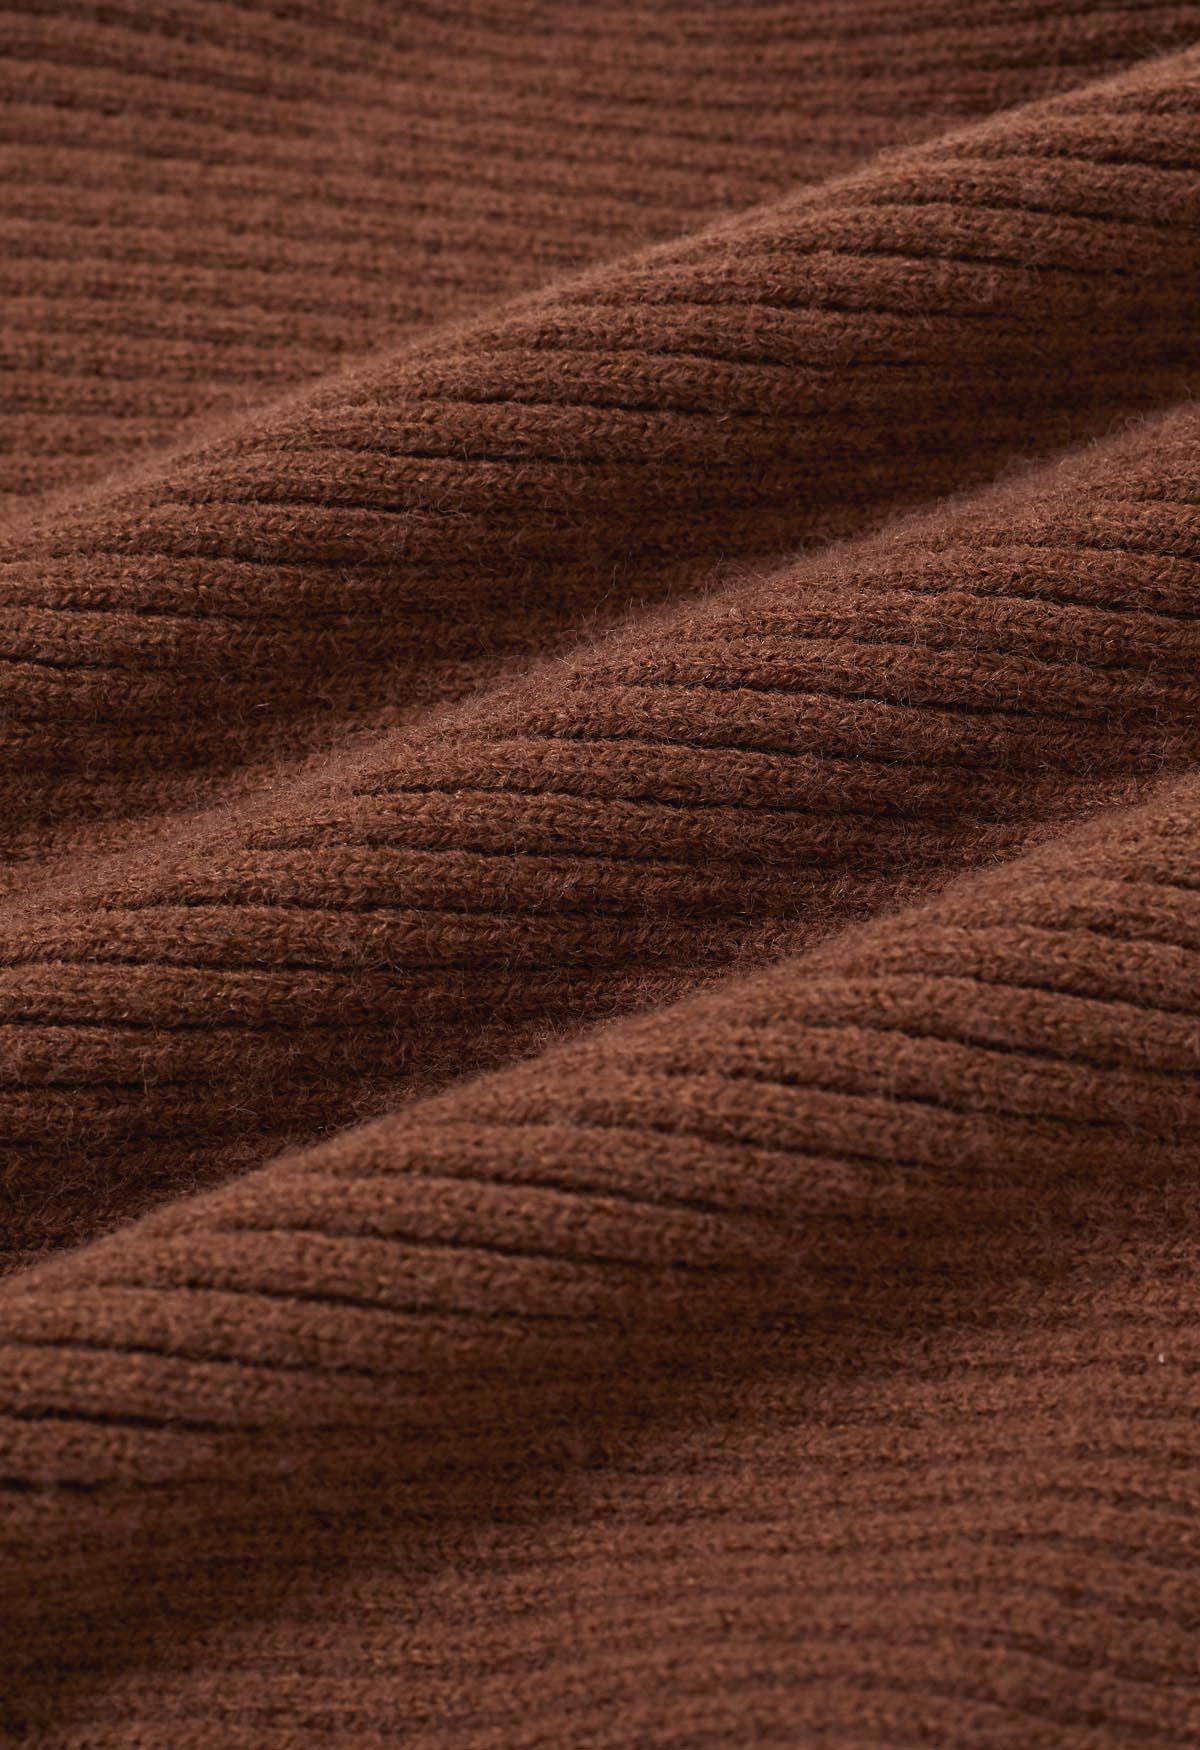 Impresionante suéter de punto acanalado con mangas de murciélago en color caramelo